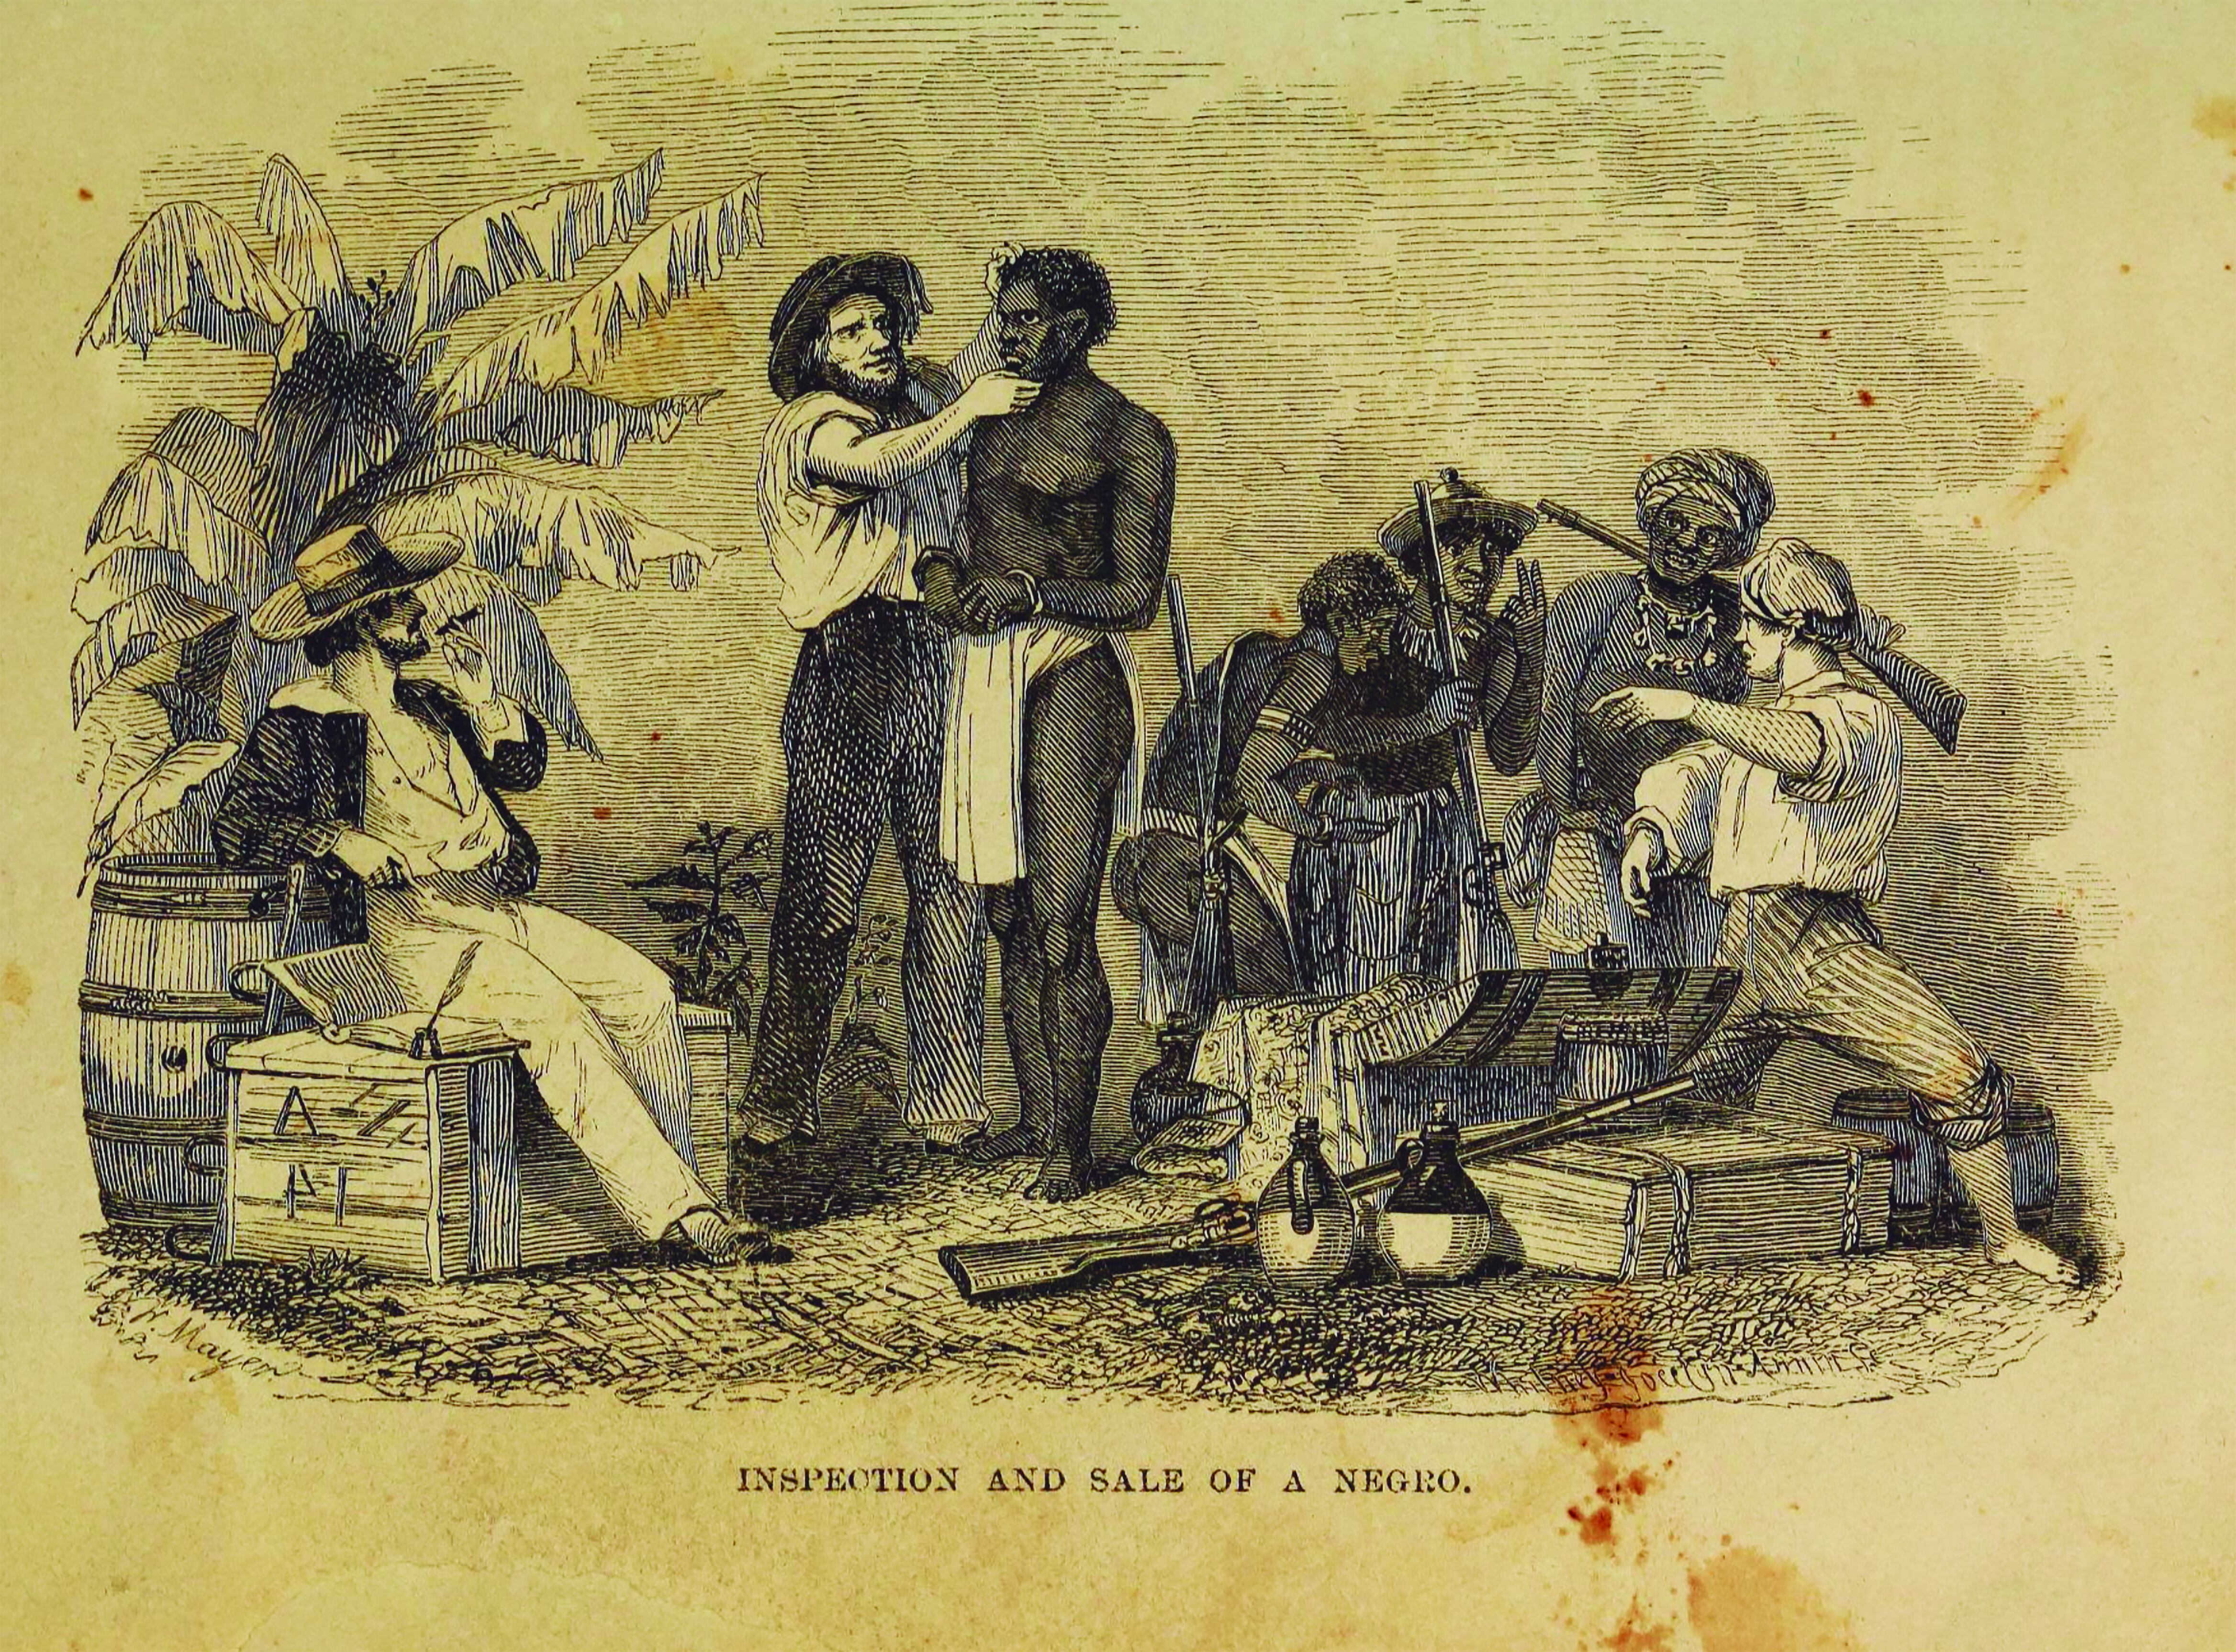 Inspección y venta de esclavos. New York, 1854, Library Company of Philadelphia. 